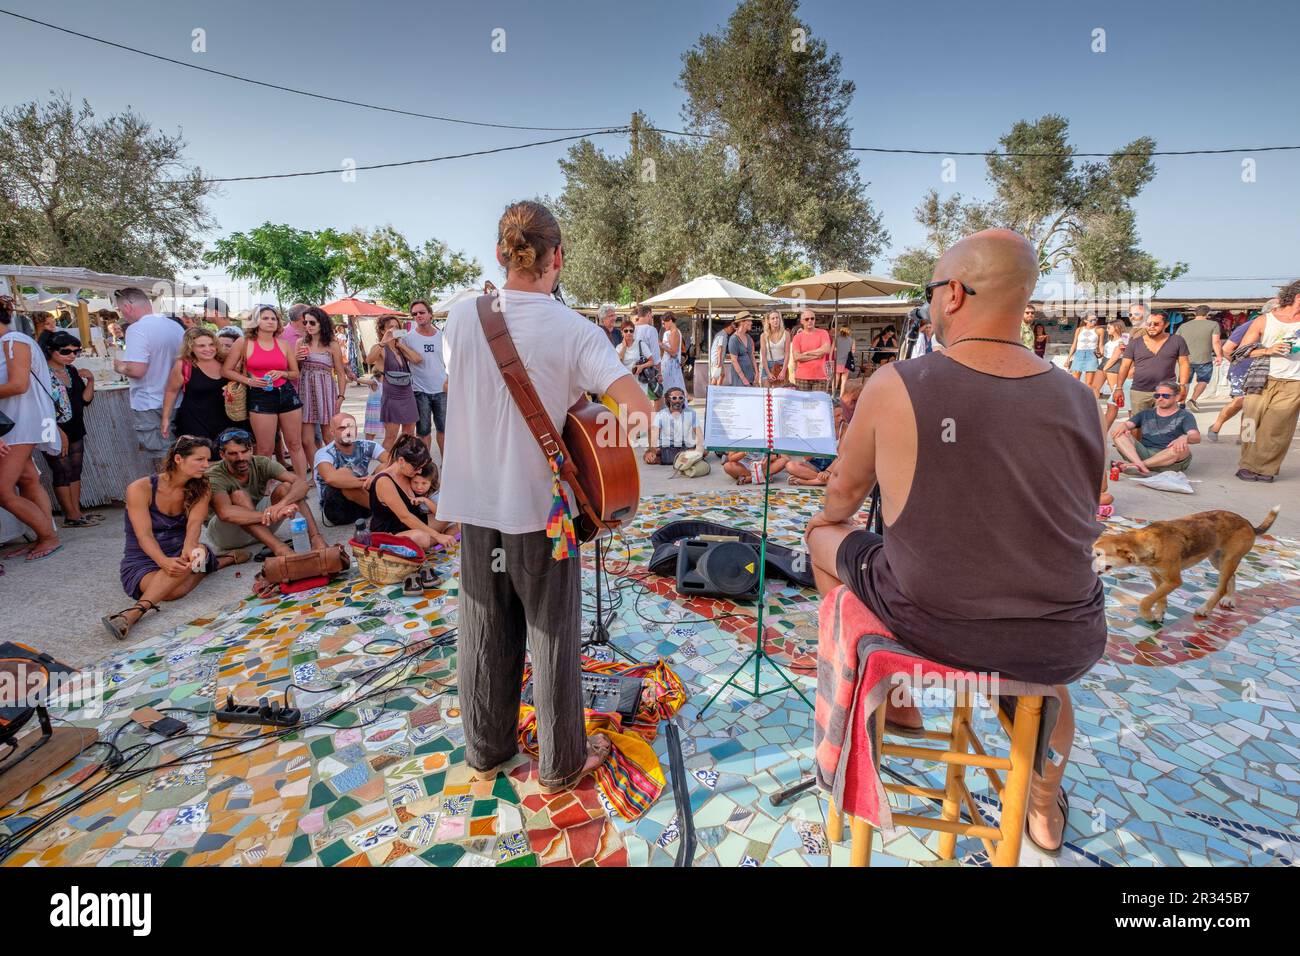 Mercadillo Hippie, Feria Artesal de La Mola, el Pilar de la Mola, Formentera, balearic islands, Spain. Stock Photo